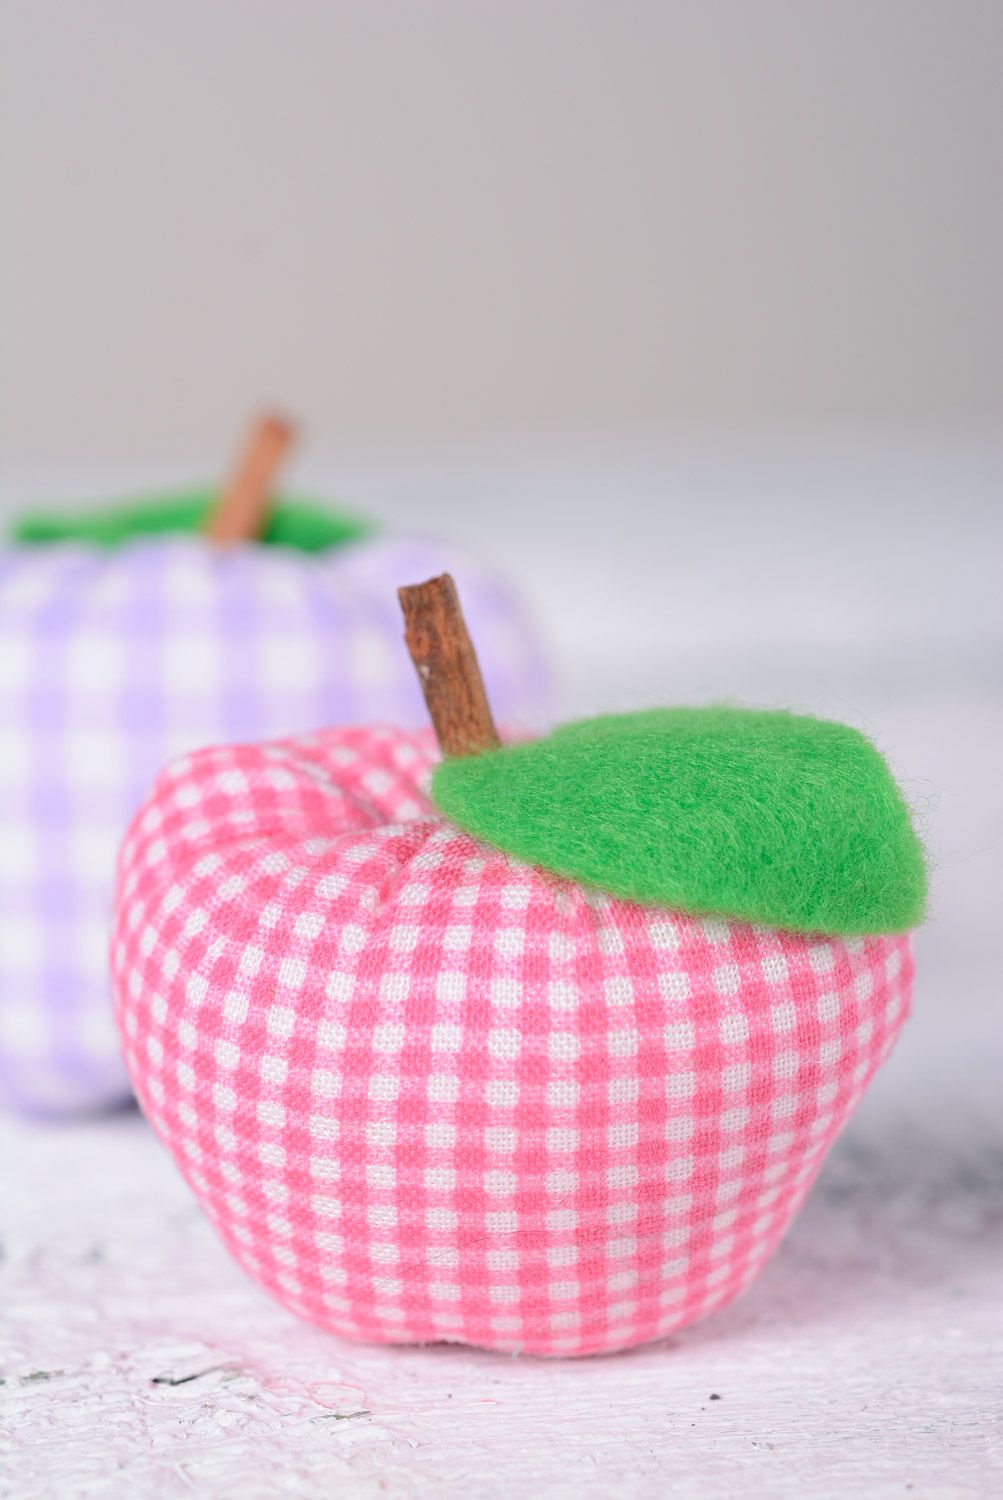 Декоративная игрушка для интерьера в виде маленького яблока мягкая пошитая вручную фото 1